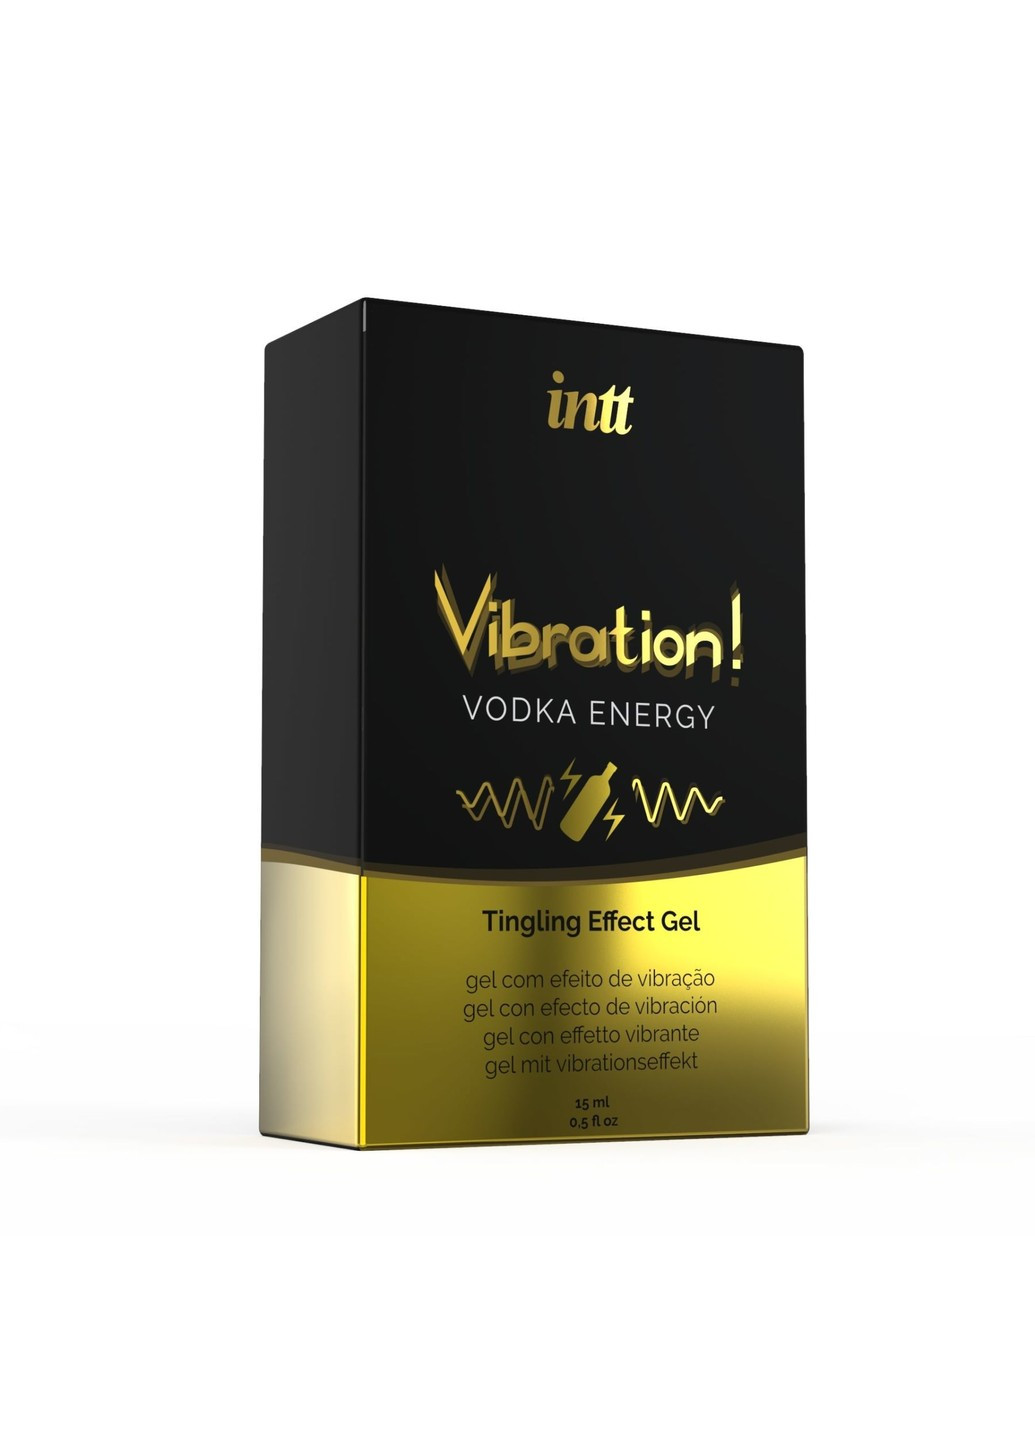 Жидкий вибратор Vibration Vodka (15 мл), густой гель, очень вкусный, действует до 30 минут Intt (266342134)